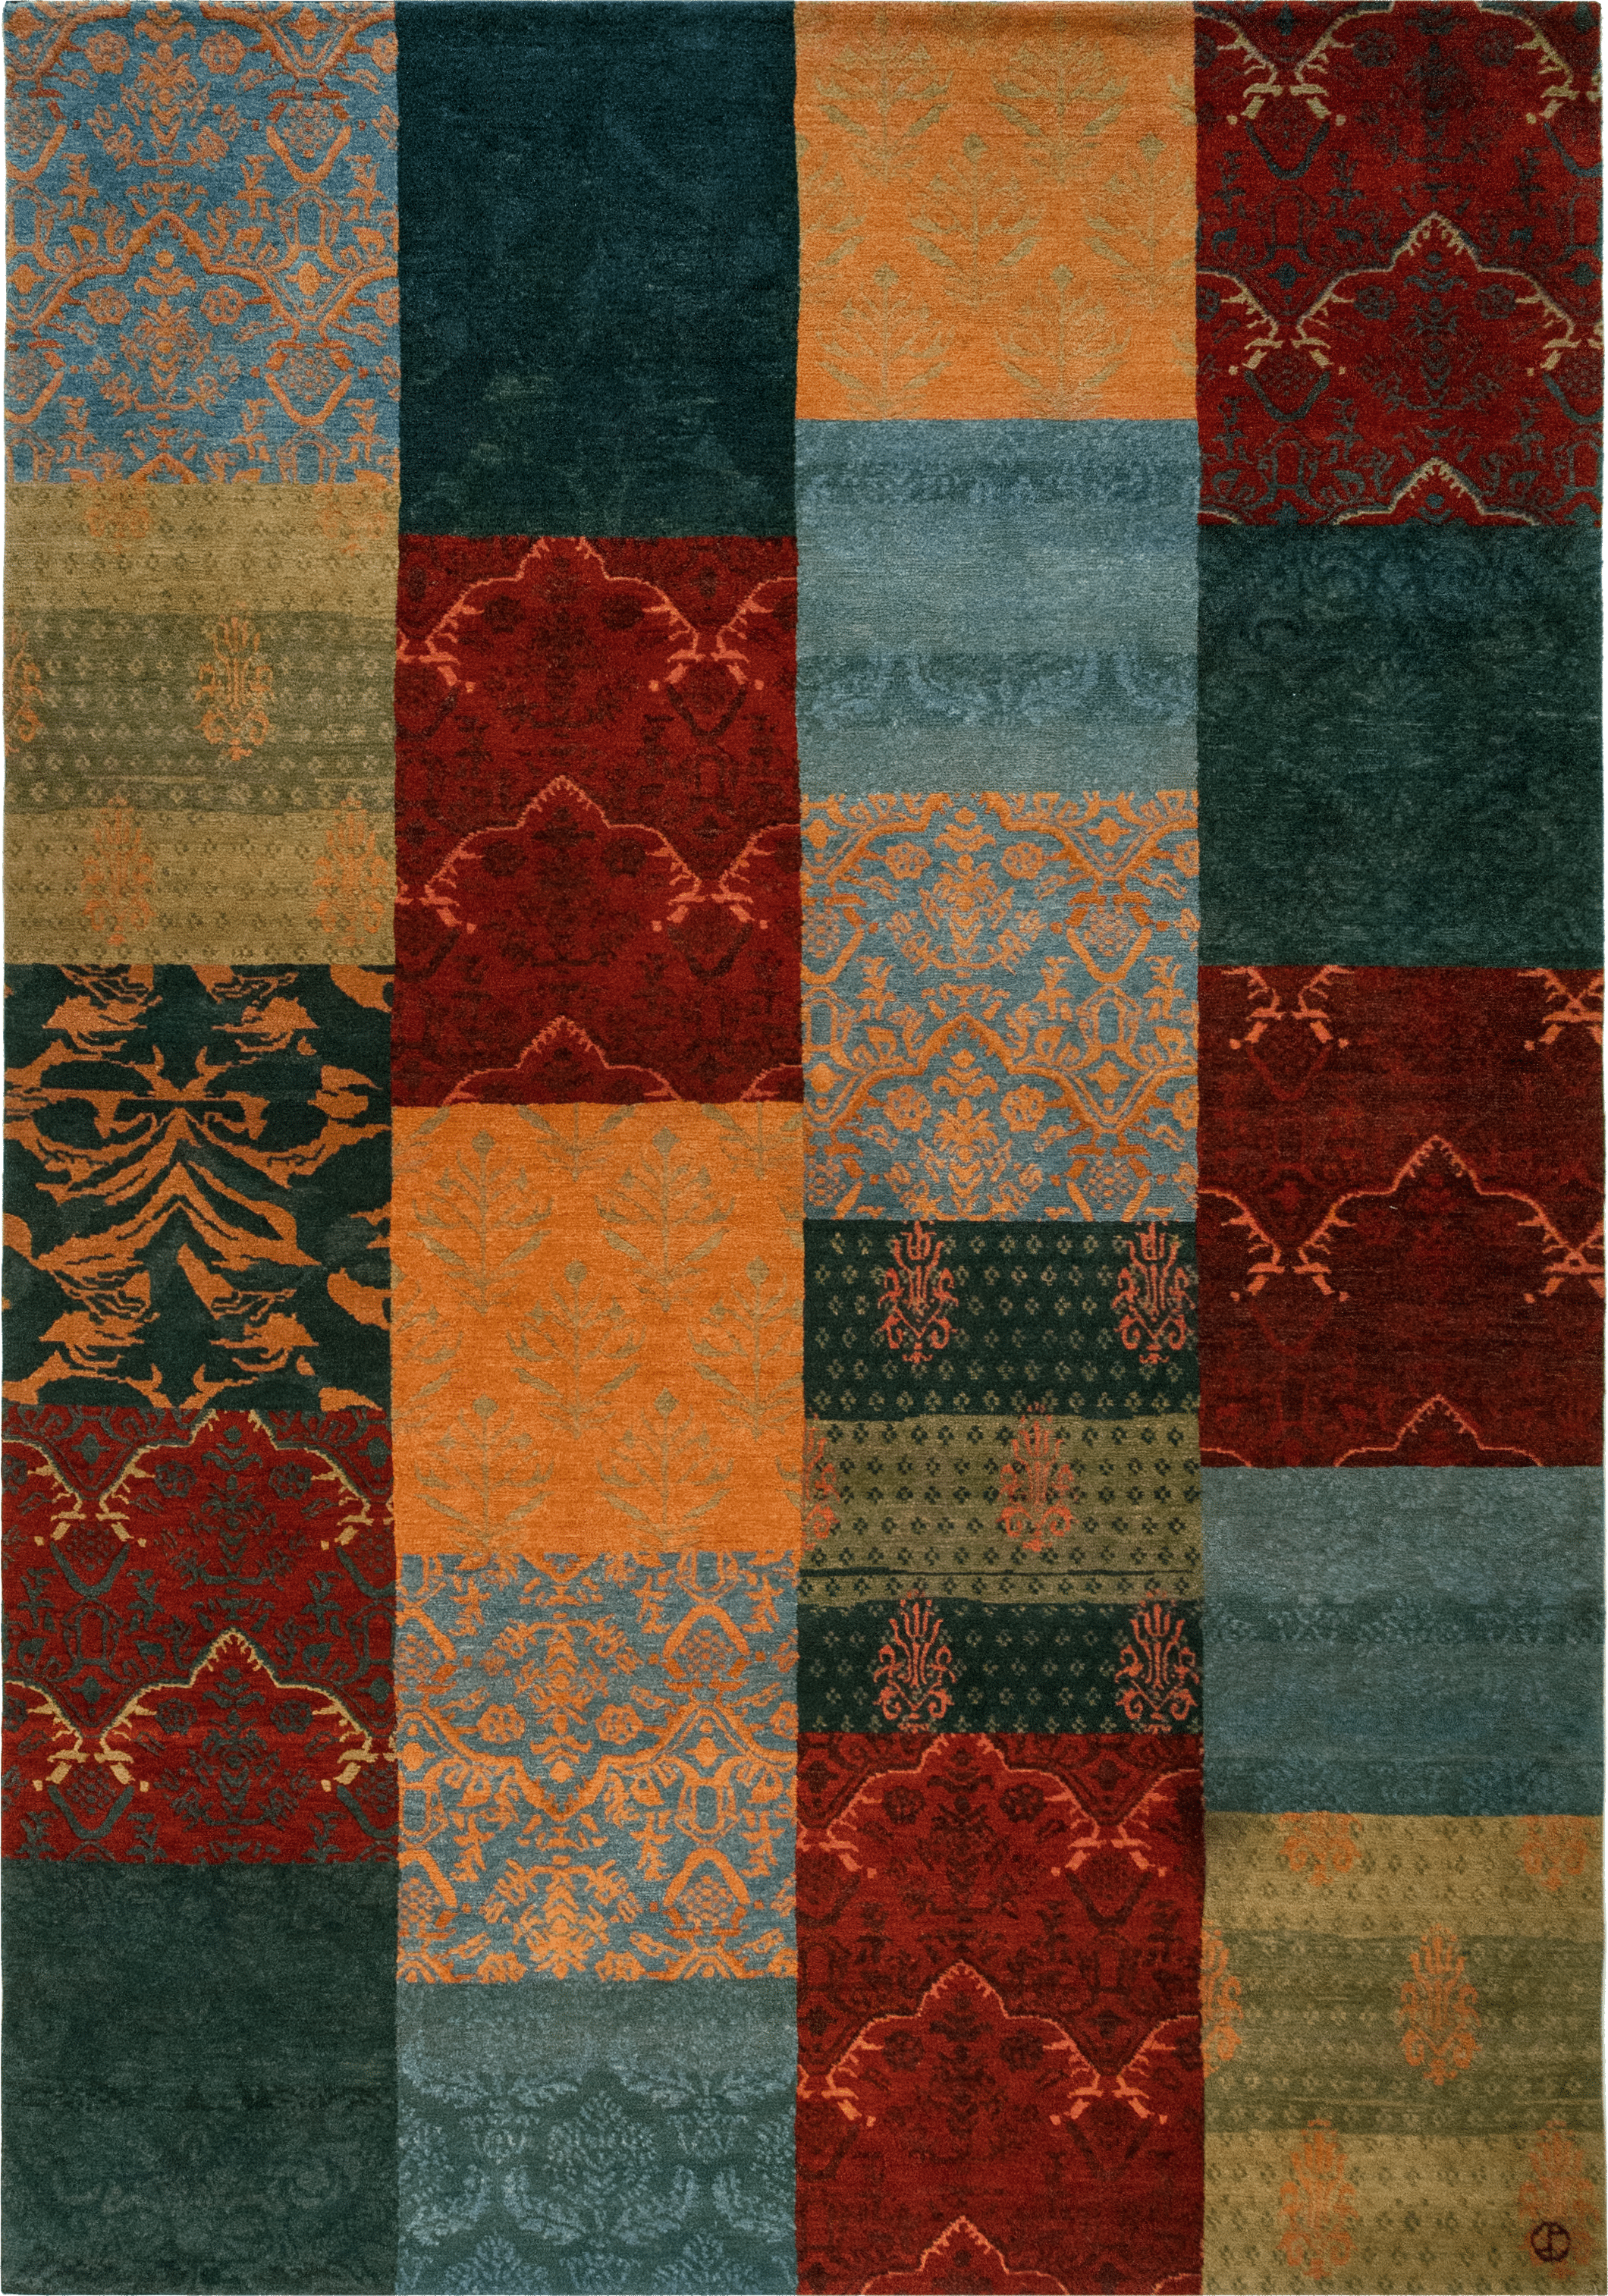 Geba Teppich "PW Barock" in unterschiedlichen Patchwork Design Flächen, bunt, aus Nepal, 100 Knoten, gefertigt aus pflanzlich gefärbter tibetischer Hochlandschafwolle - Produktbild - Geba Teppich